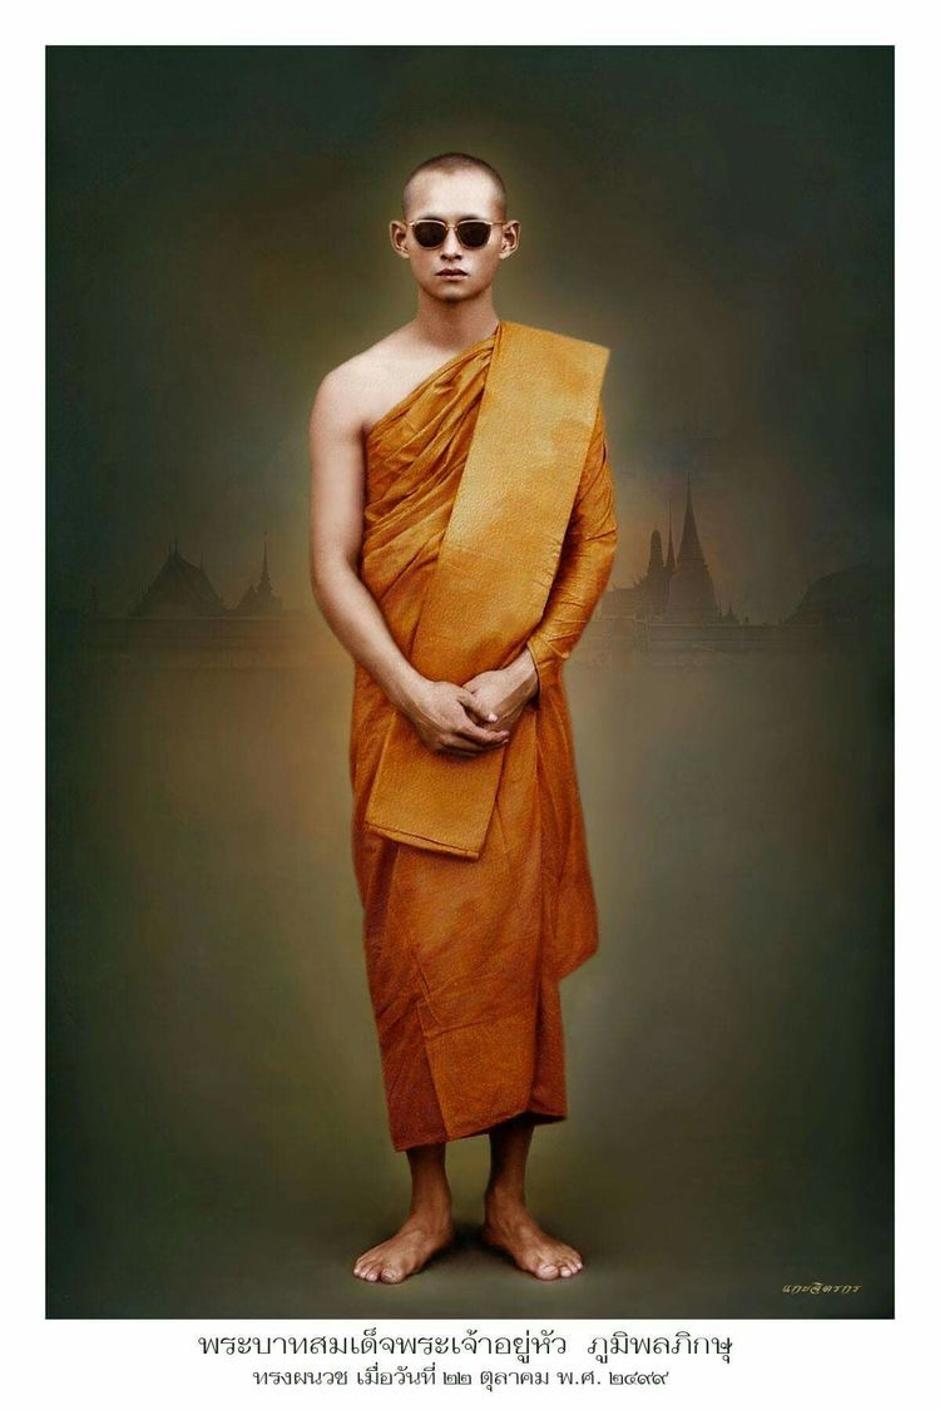 Tajlandski kralj Bhumibol Adulyadej u tradicionalnoj odjeći | Author: Pinterest